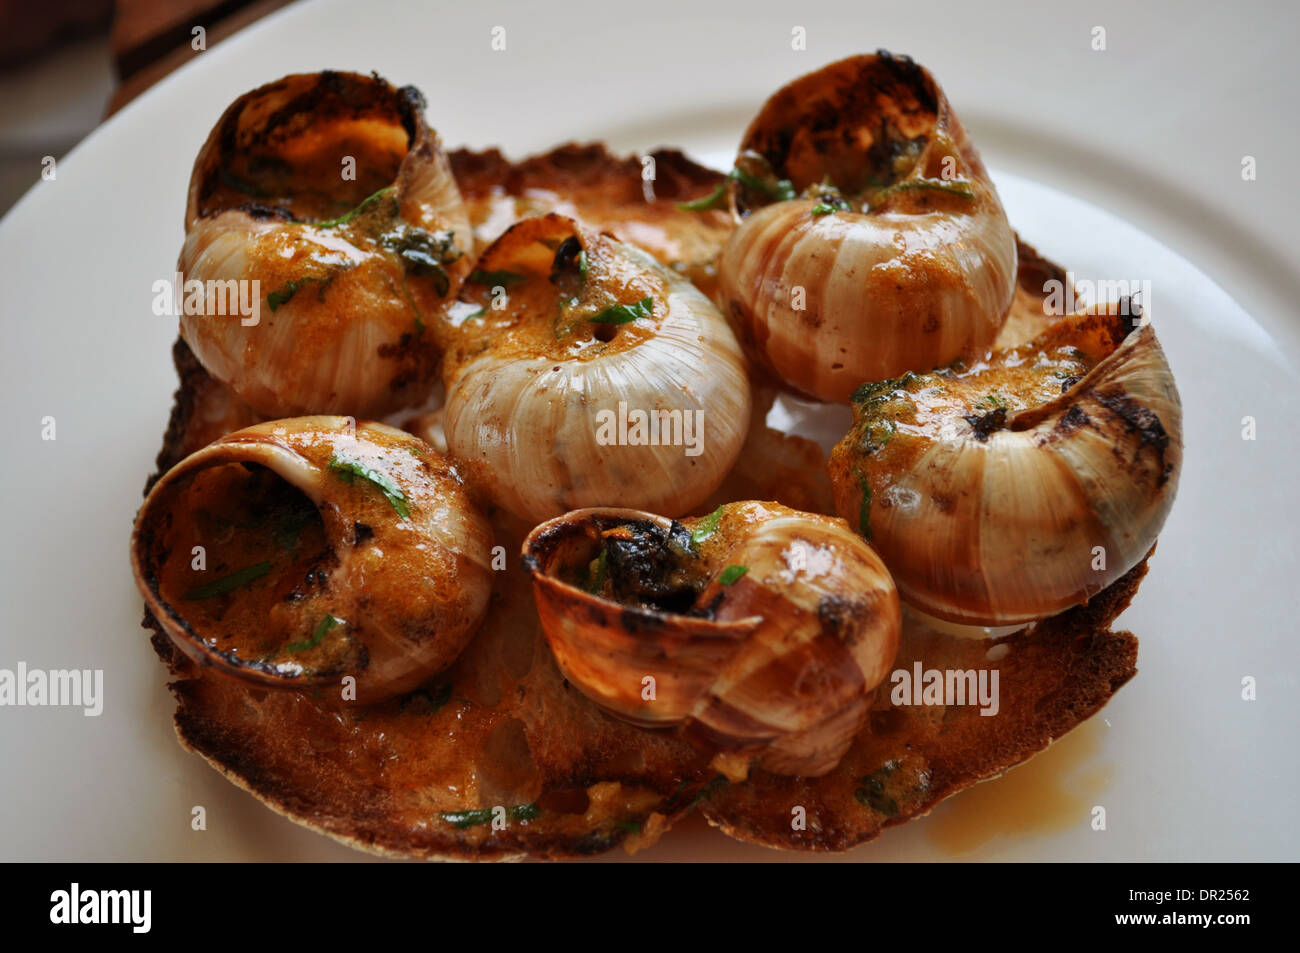 Schnecken (Schnecken) mit Knoblauch und Tomaten, serviert auf geröstetem Sauerteigbrot in ein feines restaurant Stockfoto